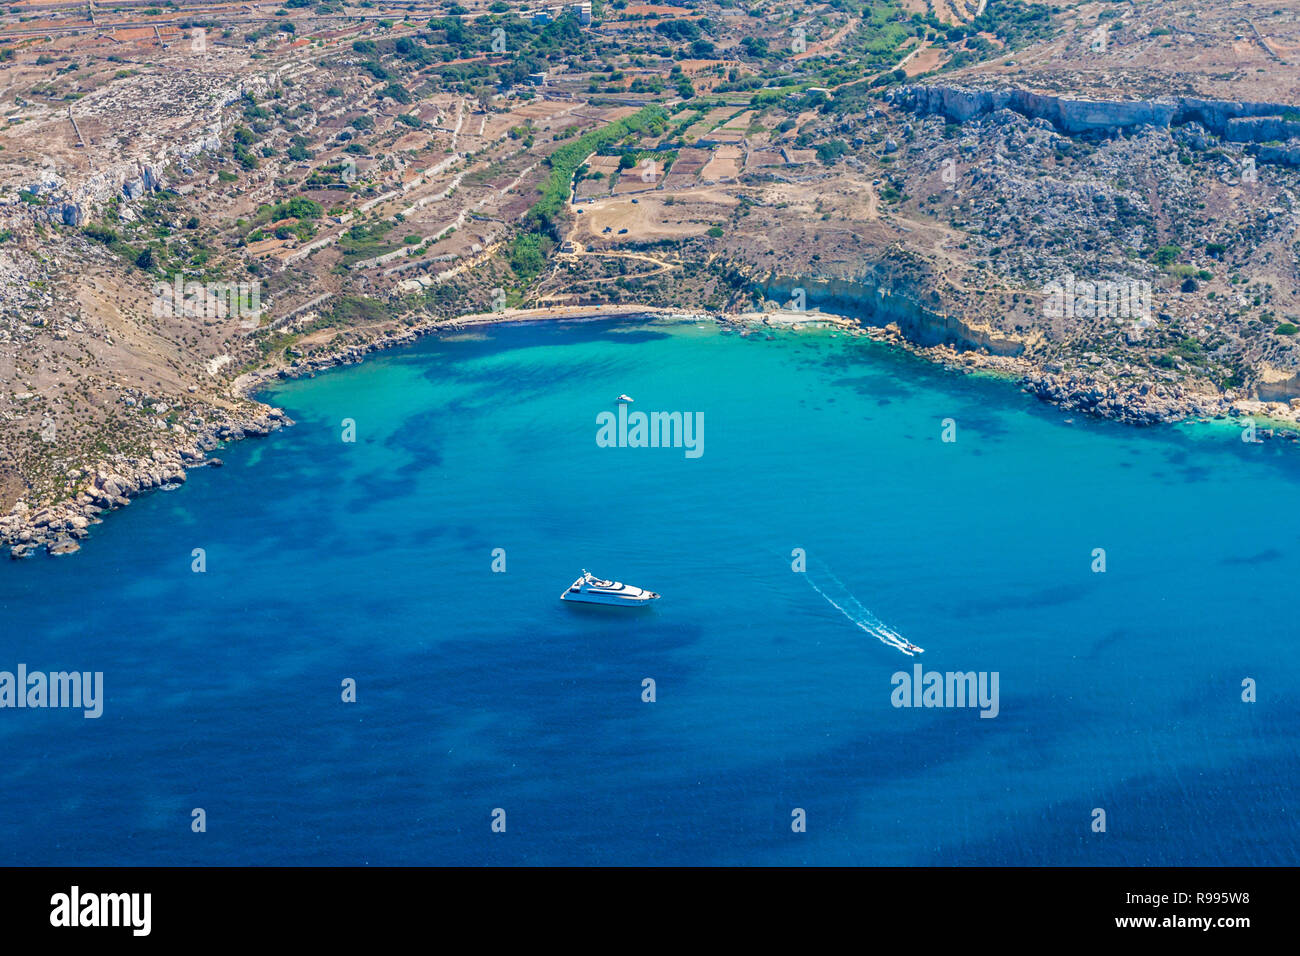 Bahía Mgiebah, calas solitarias accesible por un camino rocoso, con una pequeña playa de arena y azul agua azul turquesa. Mellieha, Malta. Foto de stock